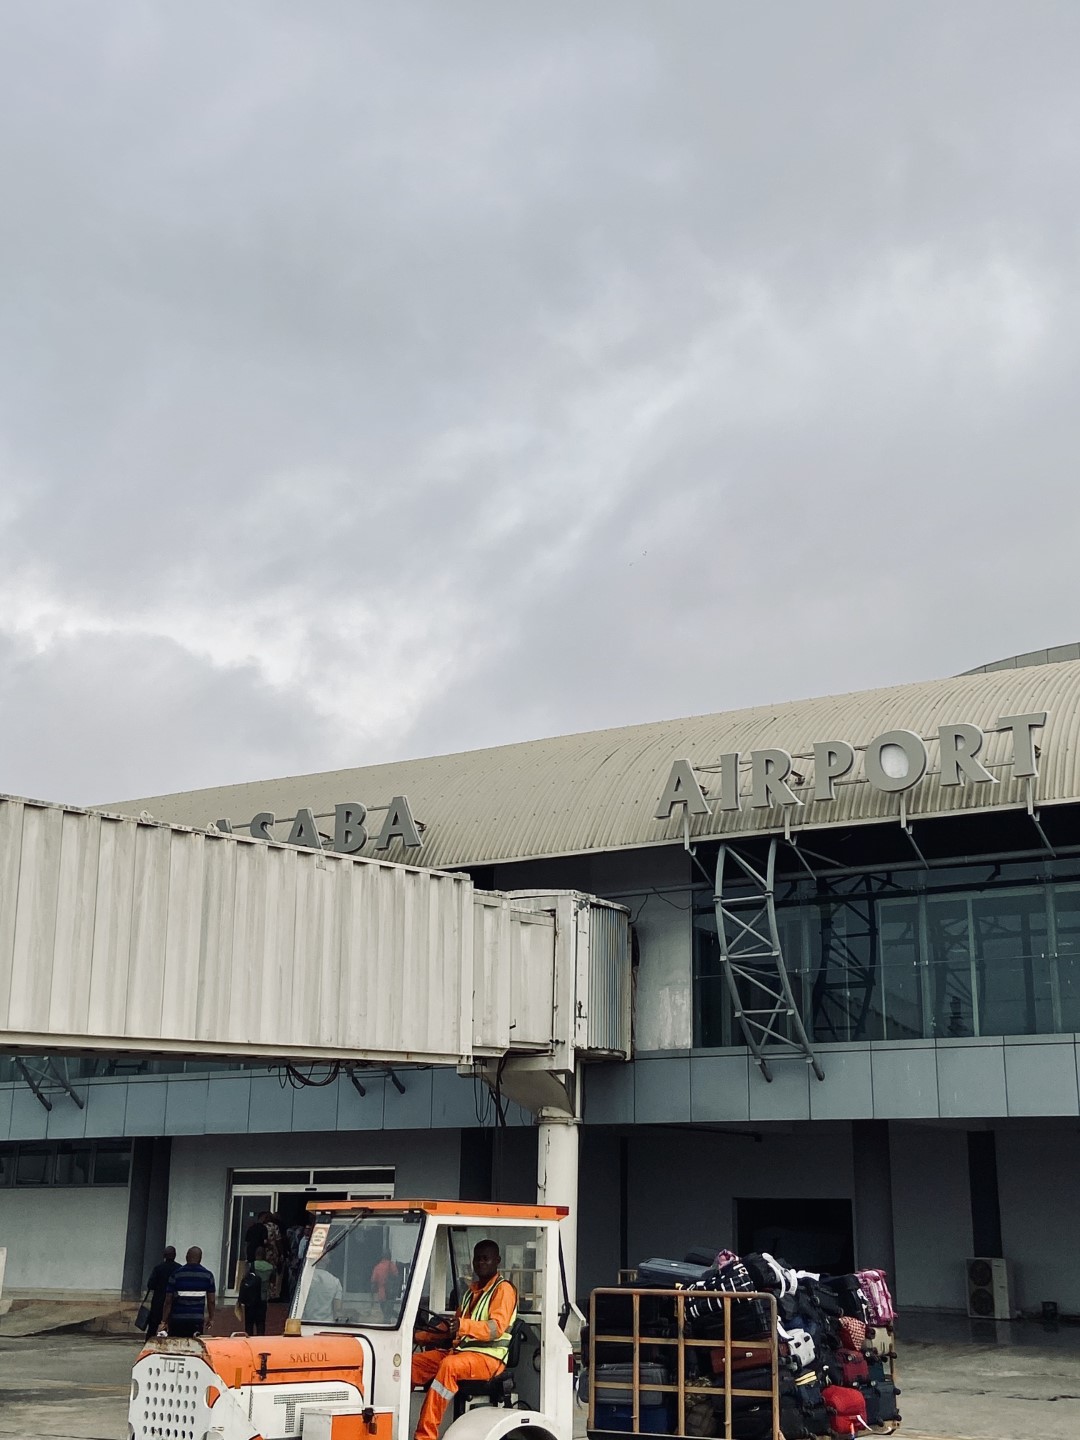 Asaba airport sign